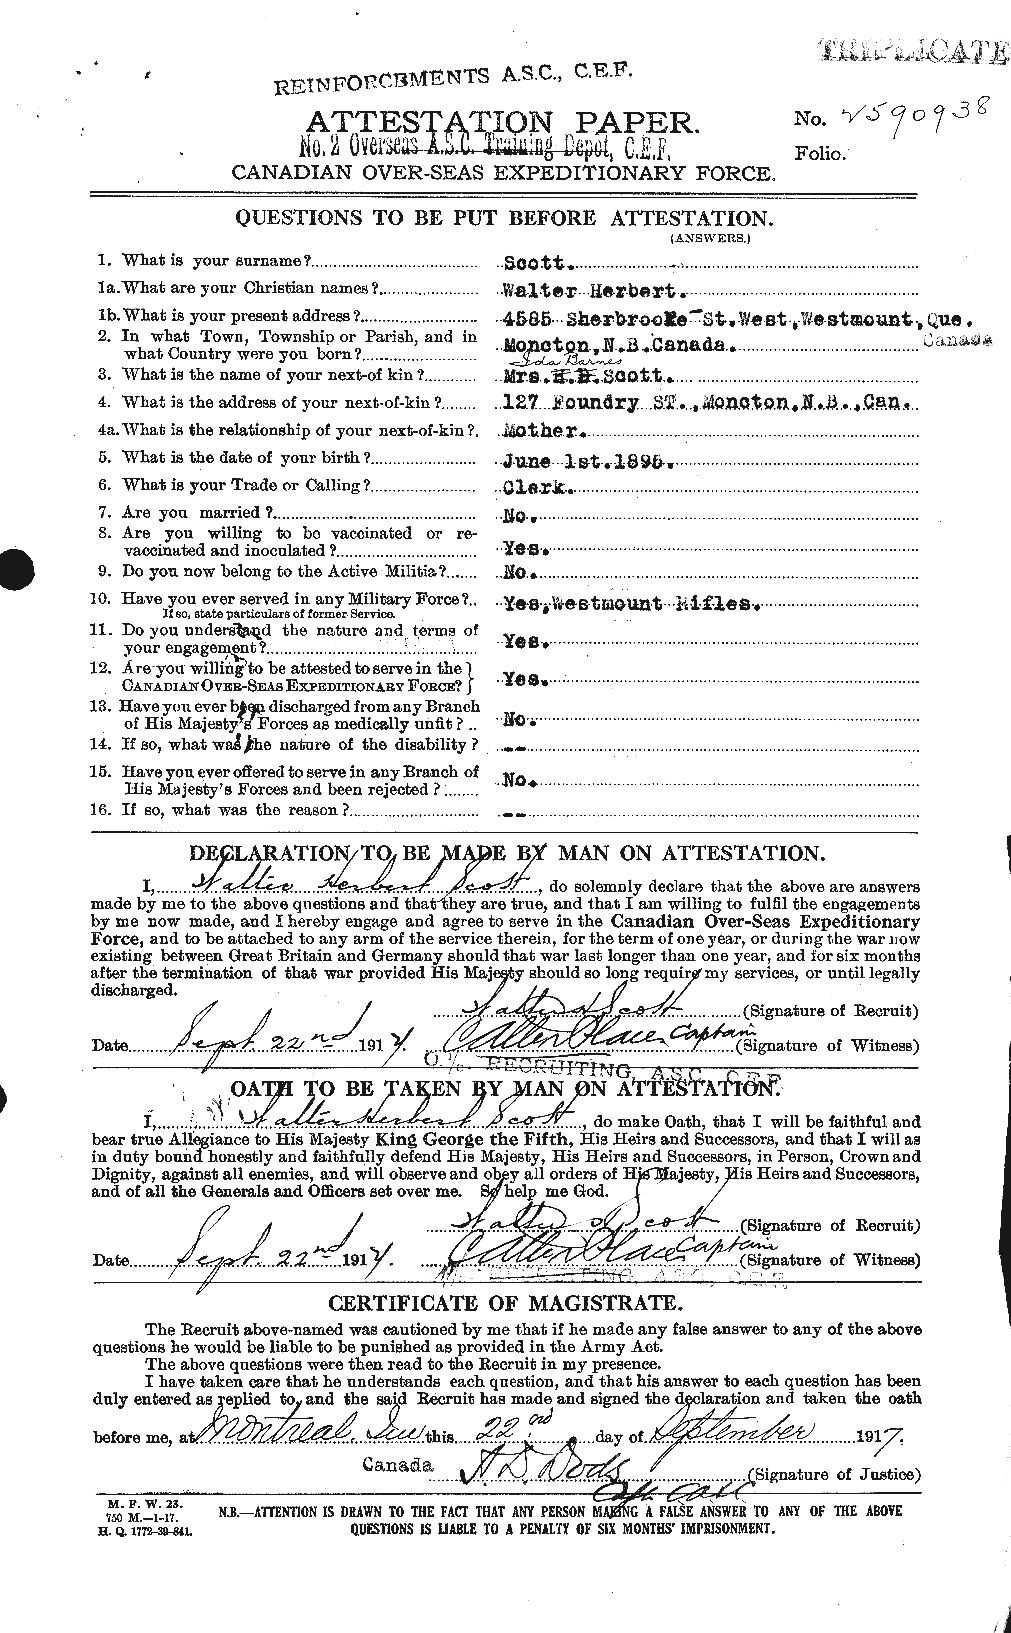 Dossiers du Personnel de la Première Guerre mondiale - CEC 087982a